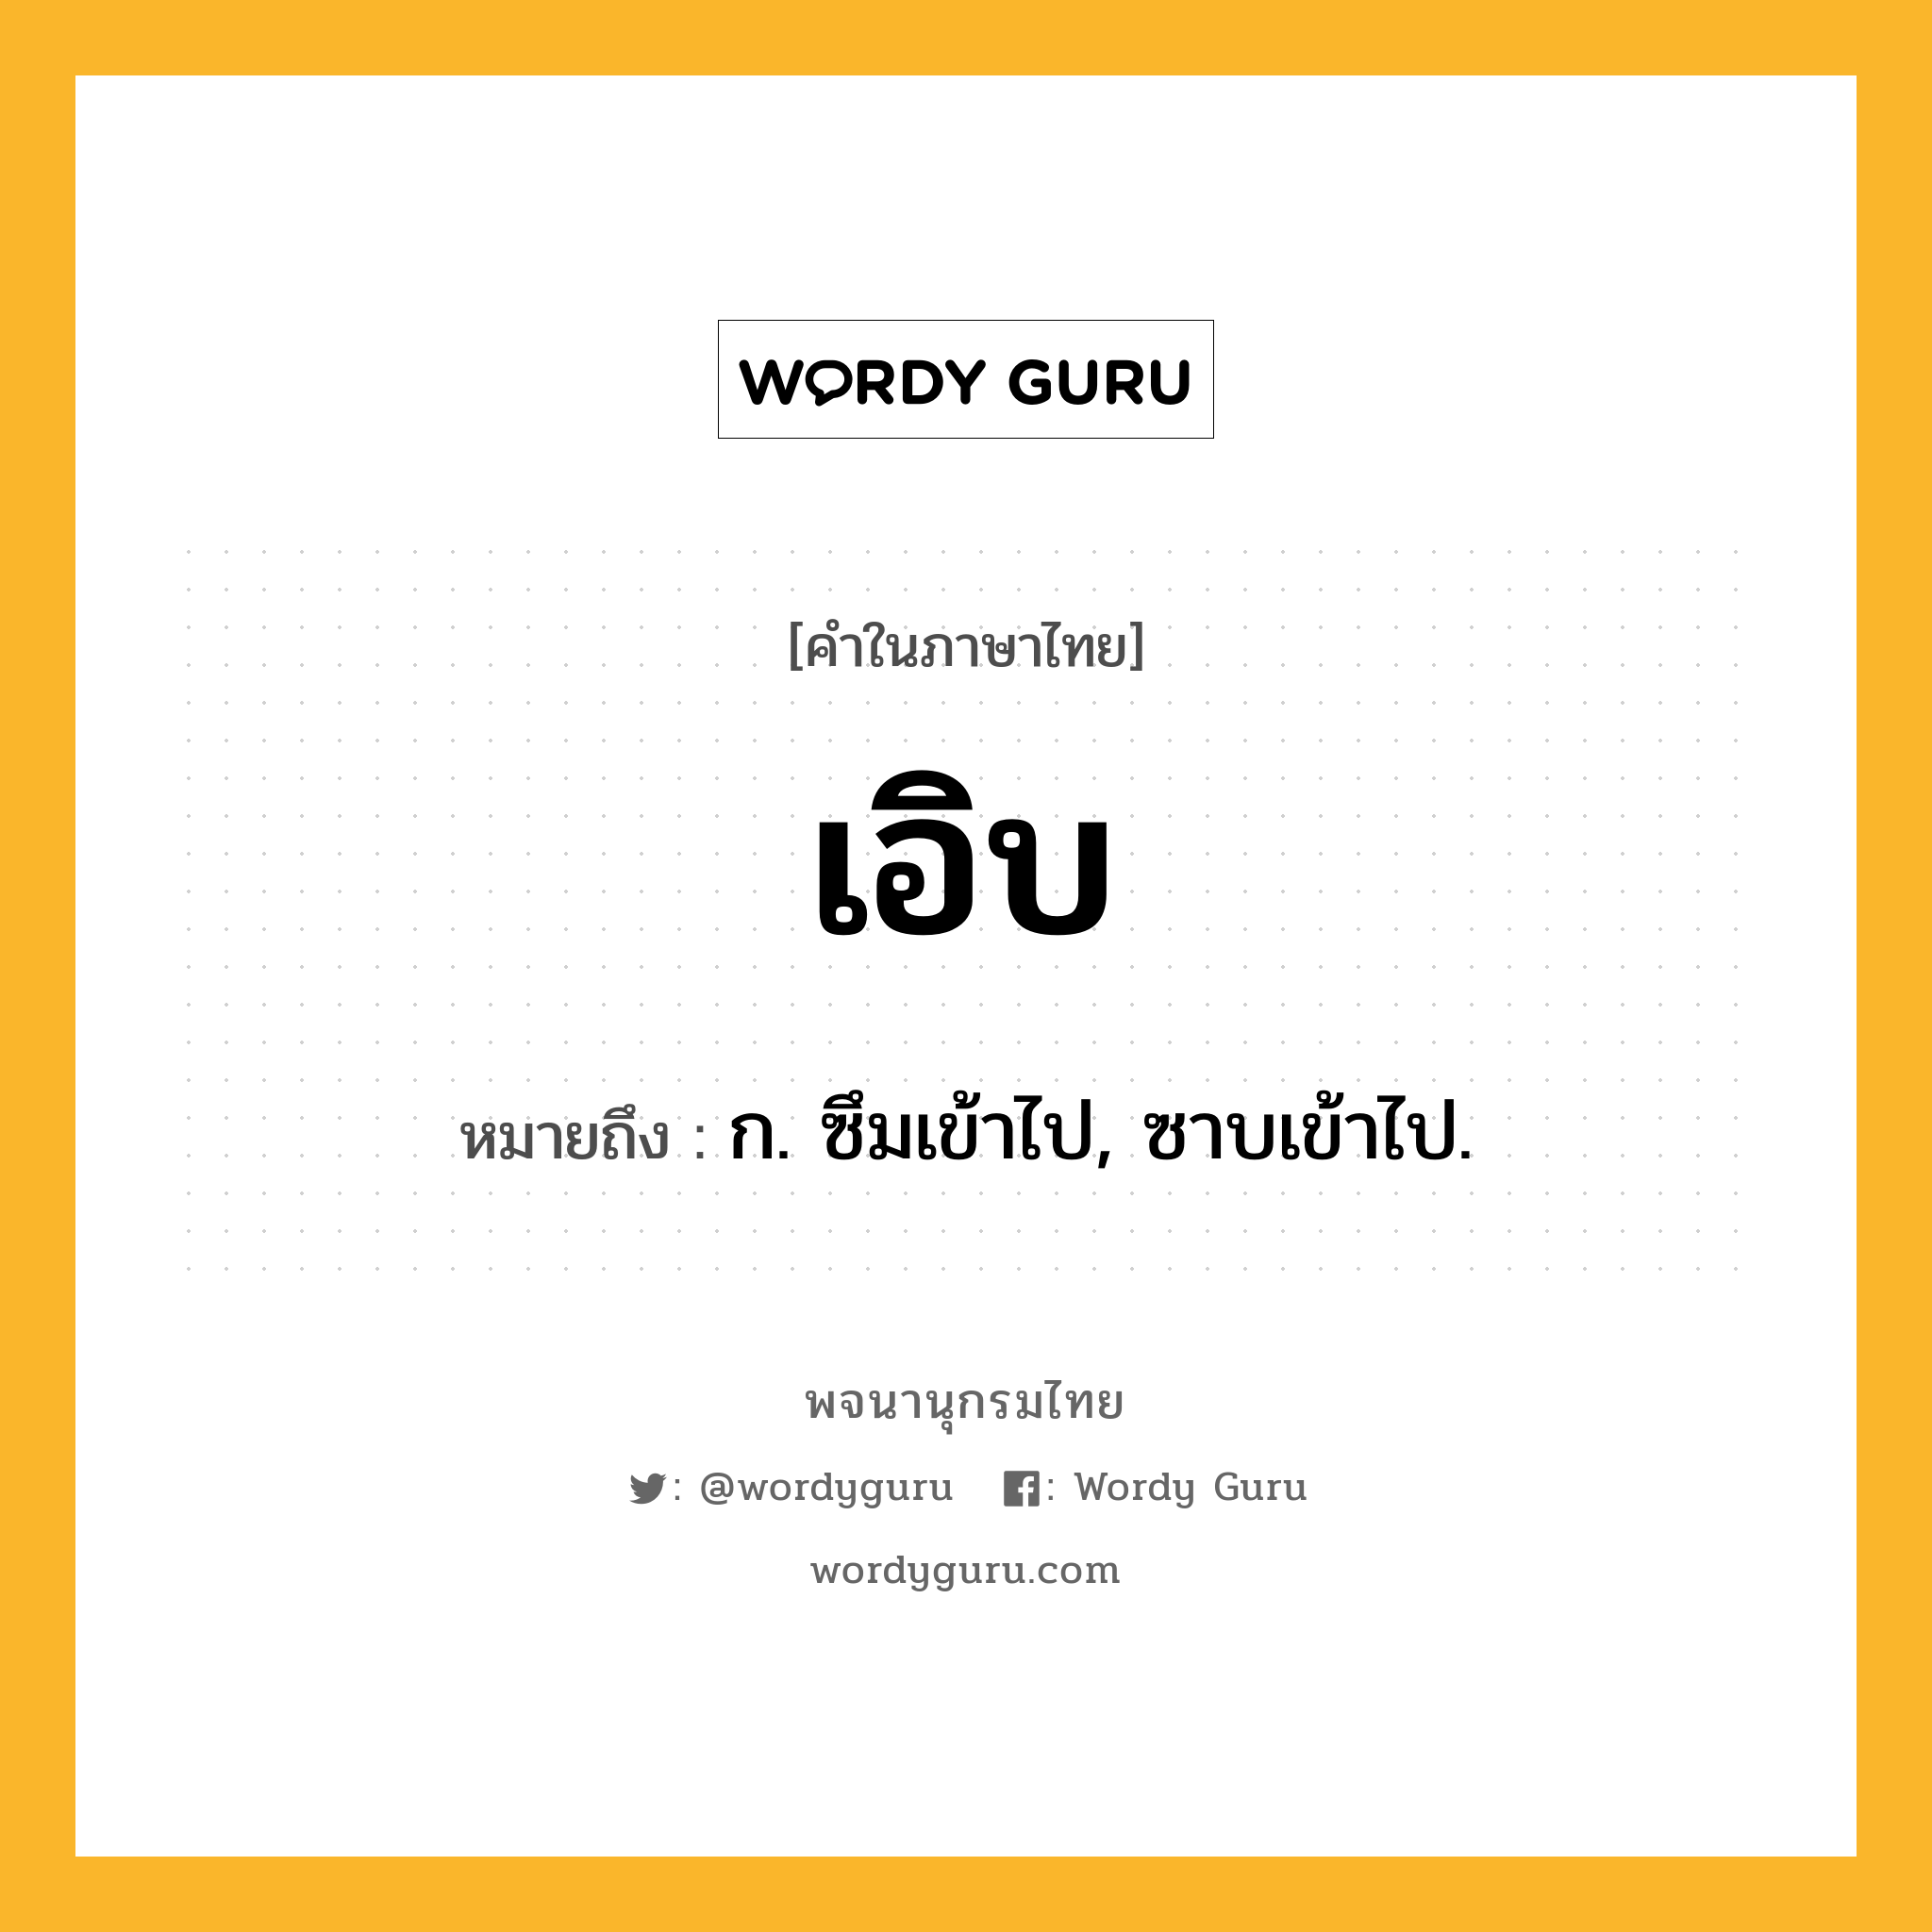 เอิบ ความหมาย หมายถึงอะไร?, คำในภาษาไทย เอิบ หมายถึง ก. ซึมเข้าไป, ซาบเข้าไป.